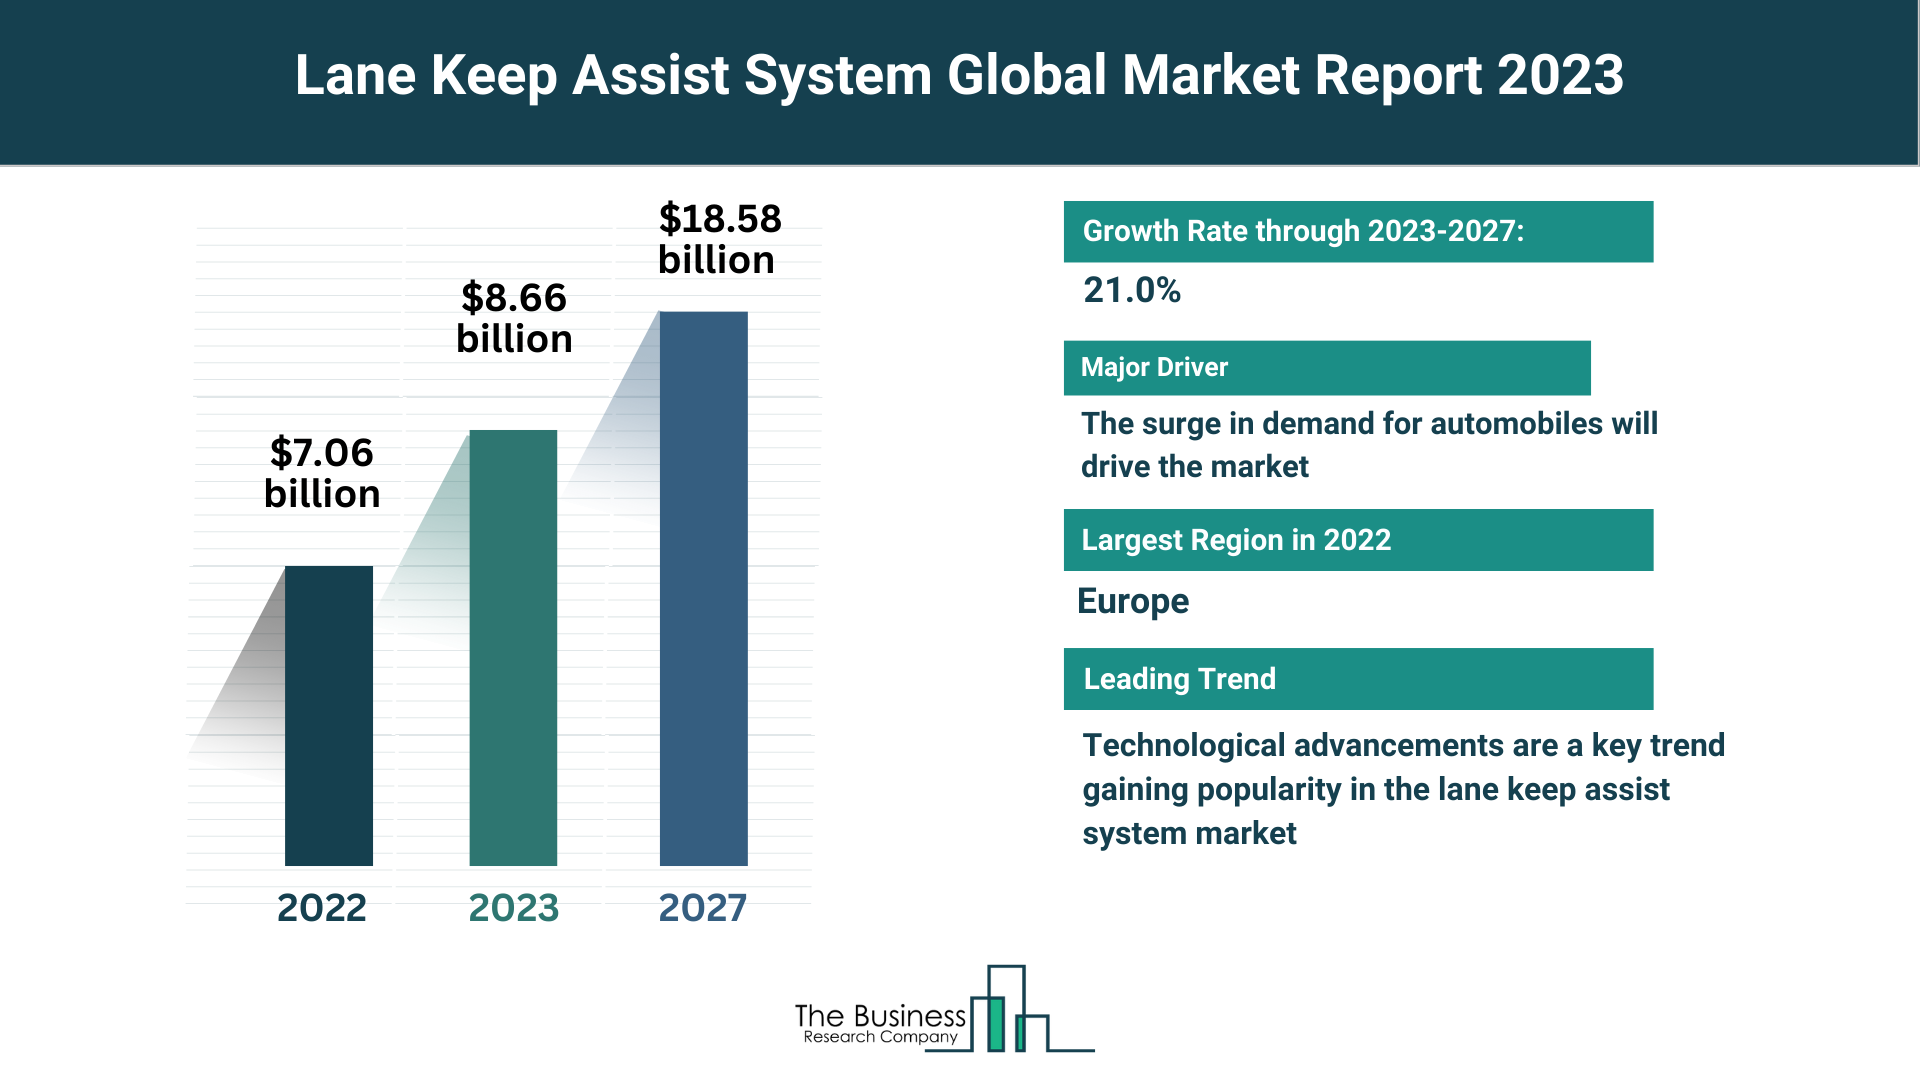 Global Lane Keep Assist System Market Size